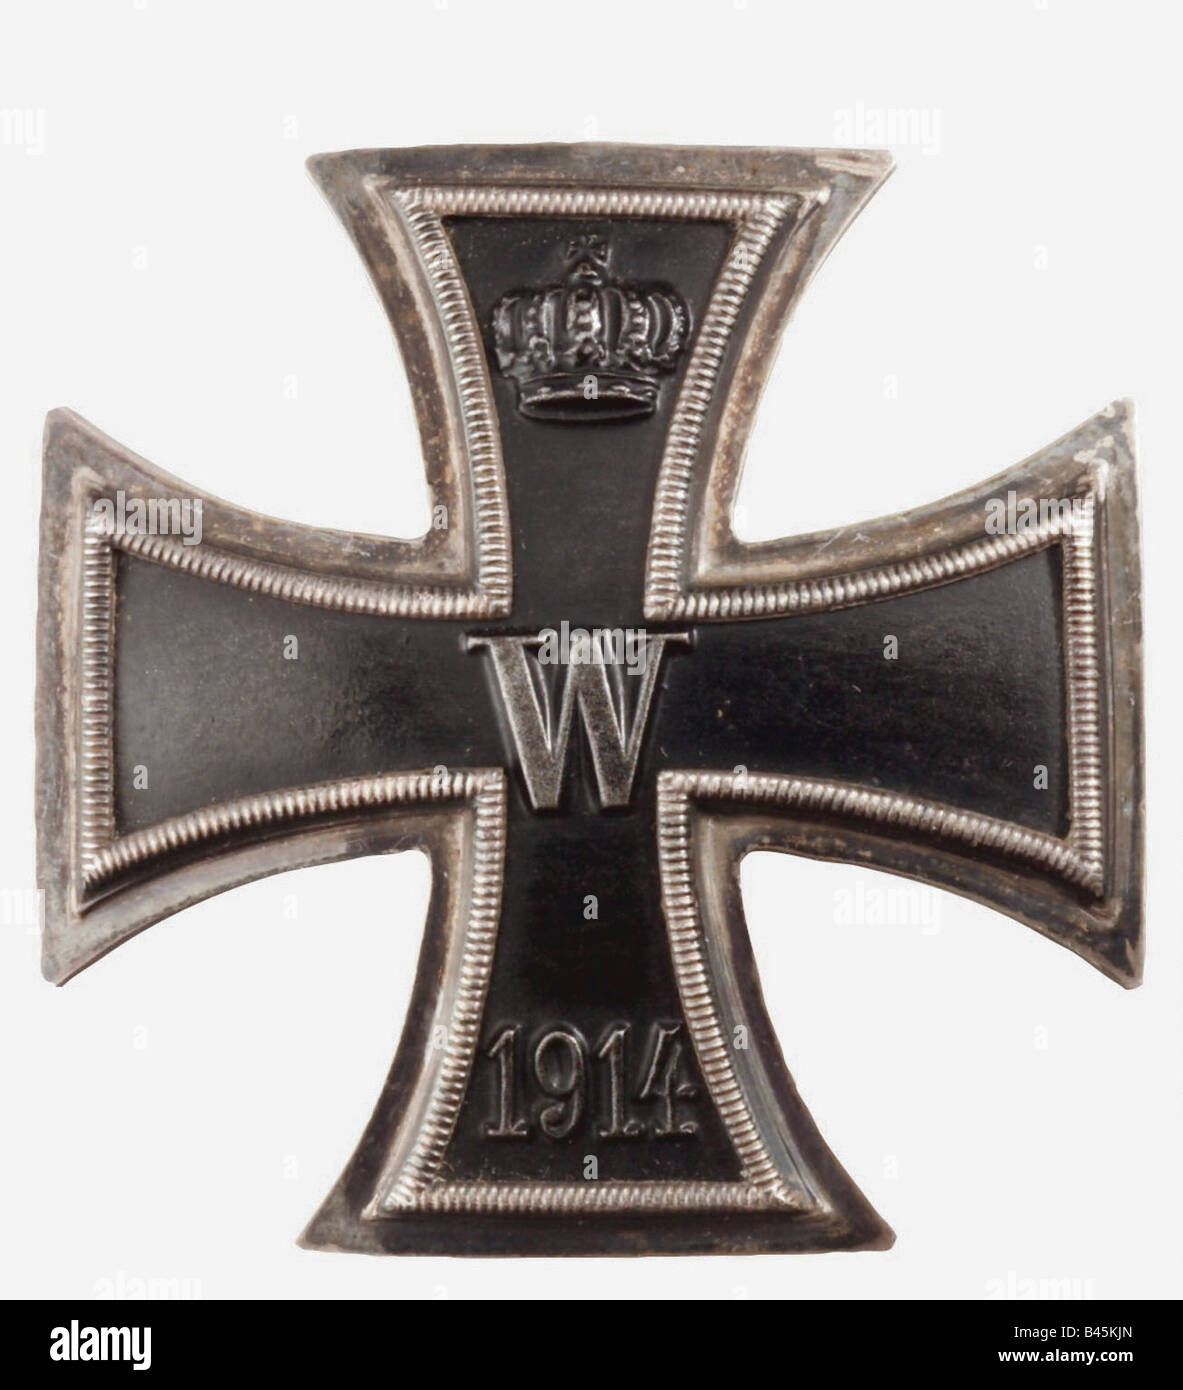 ALLEMAGNE croix de fer allemande Reich allemand de 1° classe WW 2